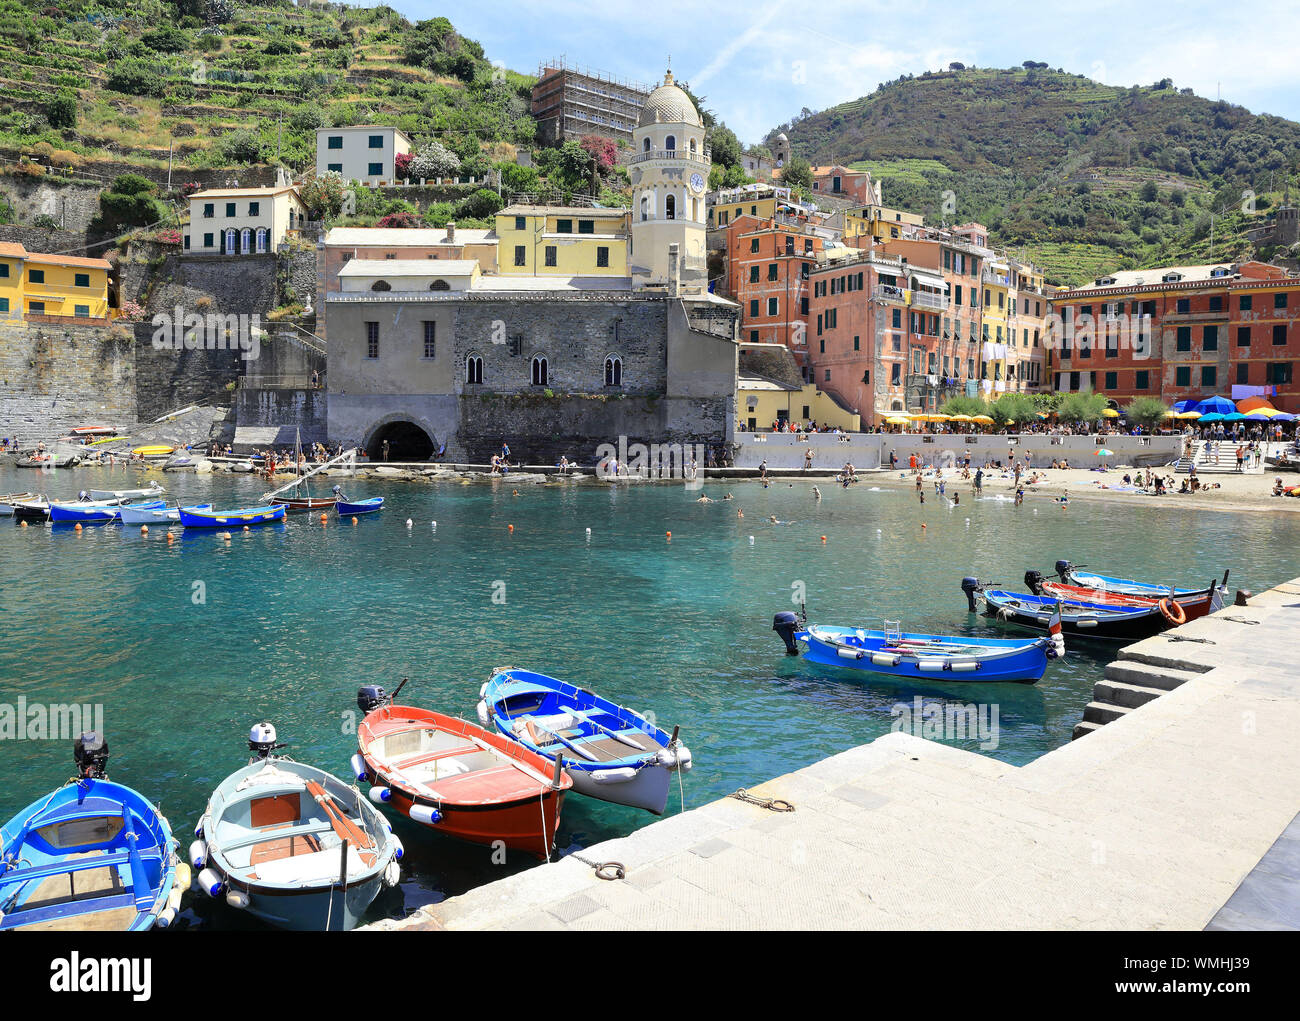 Vernazza, Cinque Terre - on the Italian Coastline Stock Photo